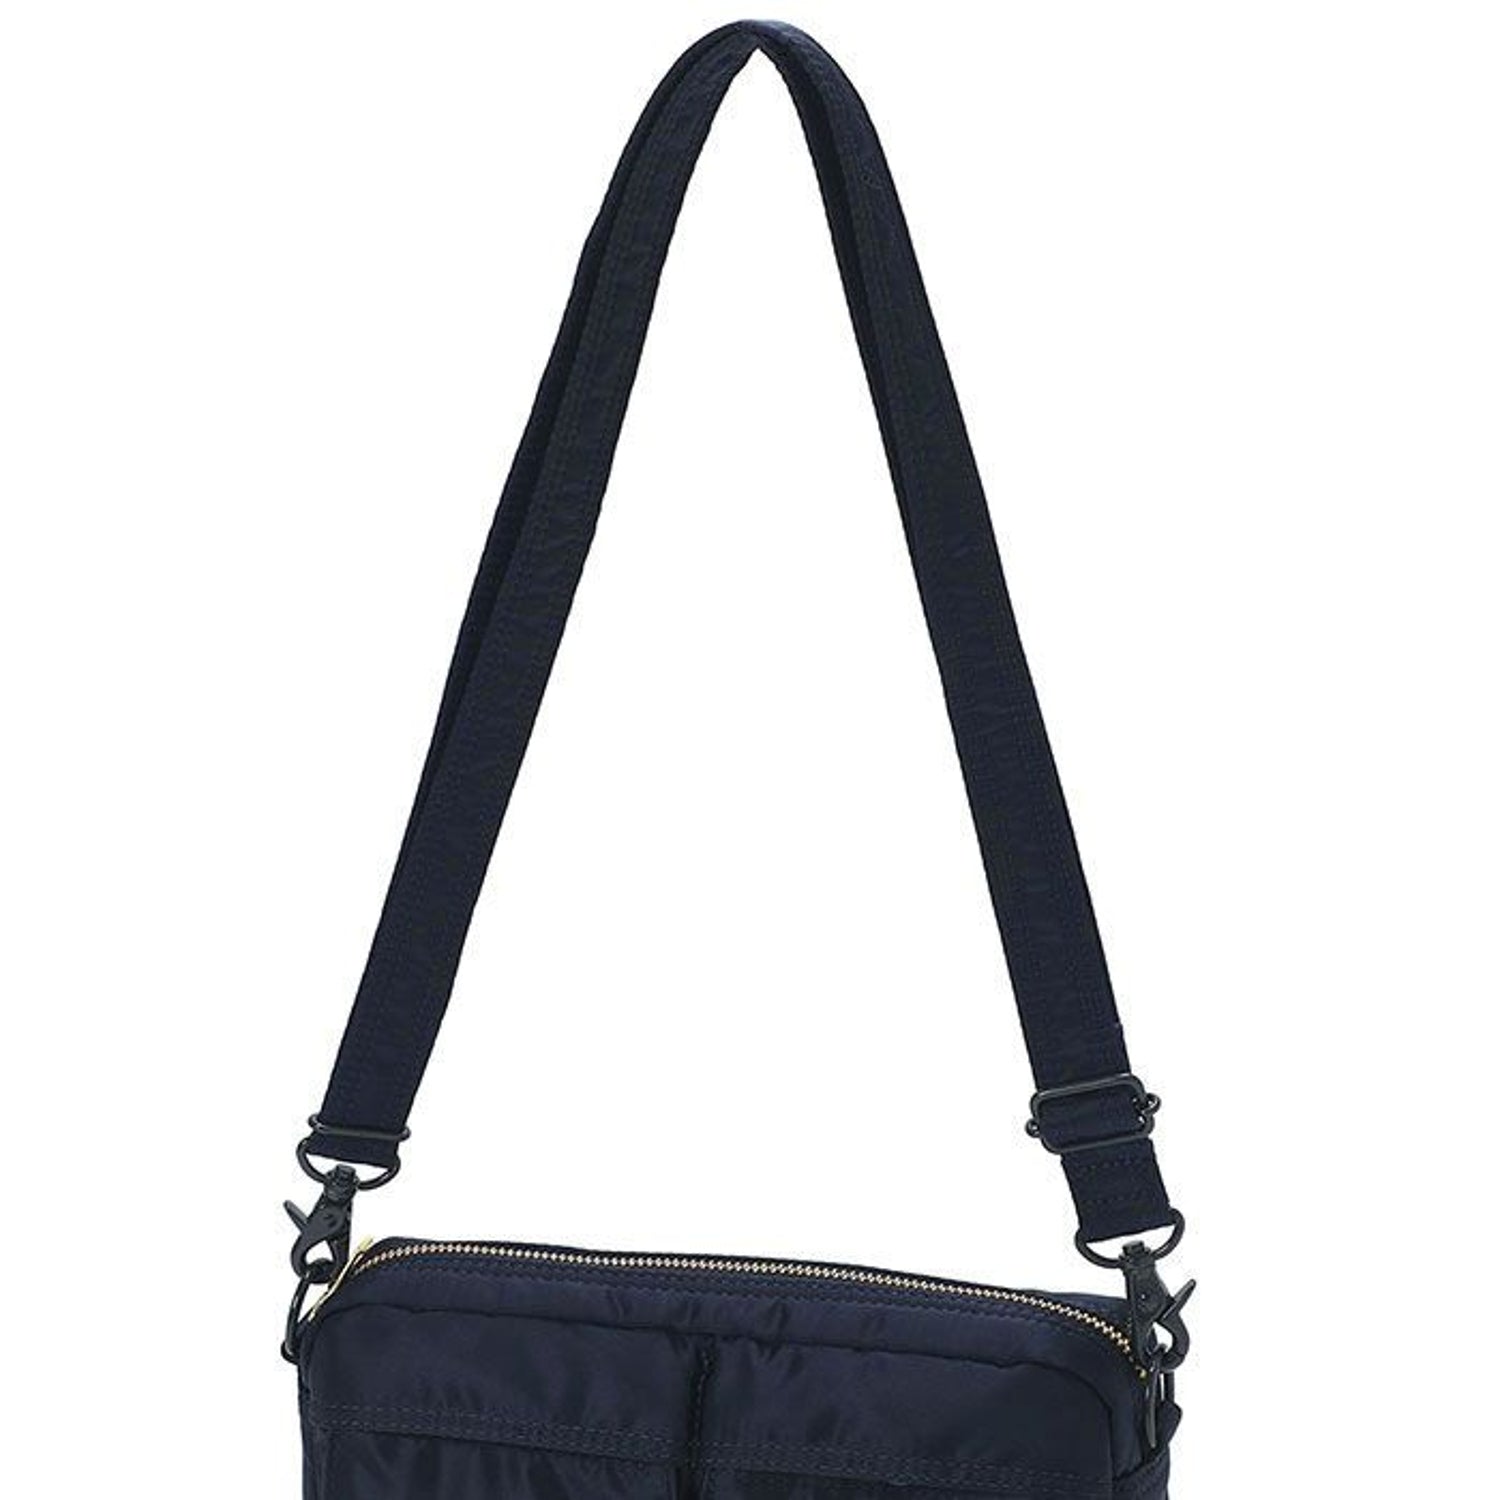 Porter-Yoshida & Co. Tanker Shoulder Bag (M) Mini - Black